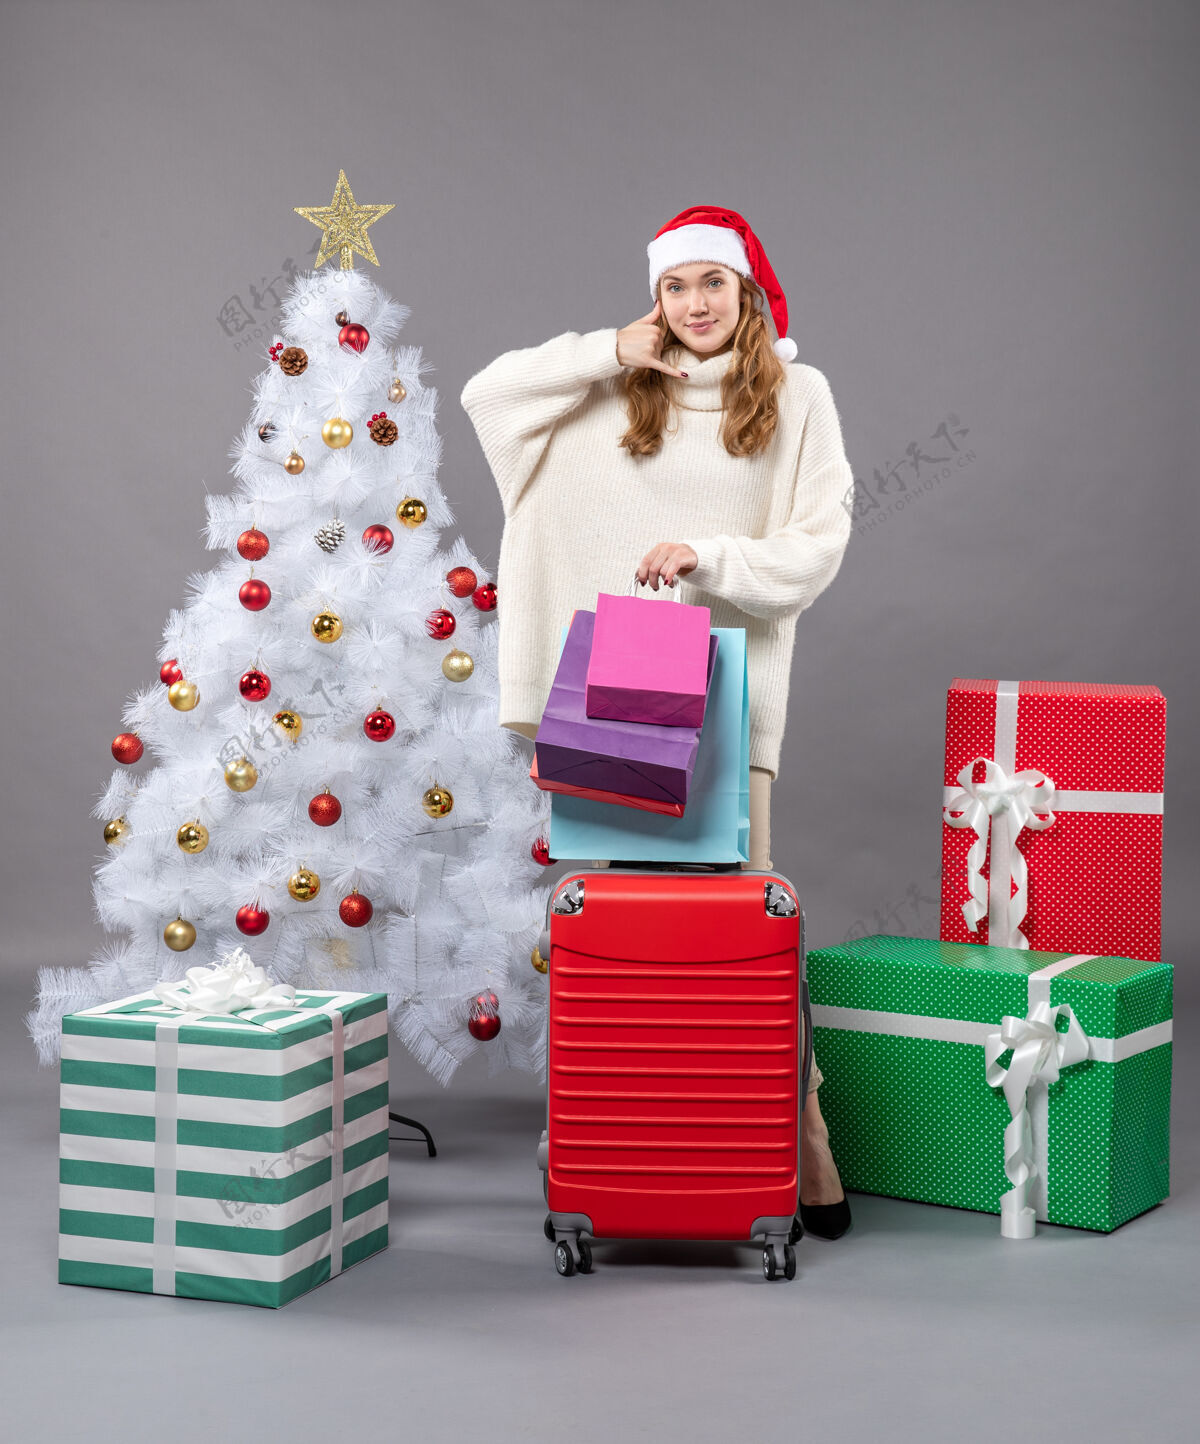 红色正面是金发女孩 戴着圣诞帽 手里拿着红色的手提箱和购物袋 上面有“给我打电话”的牌子帽子年轻圣诞树